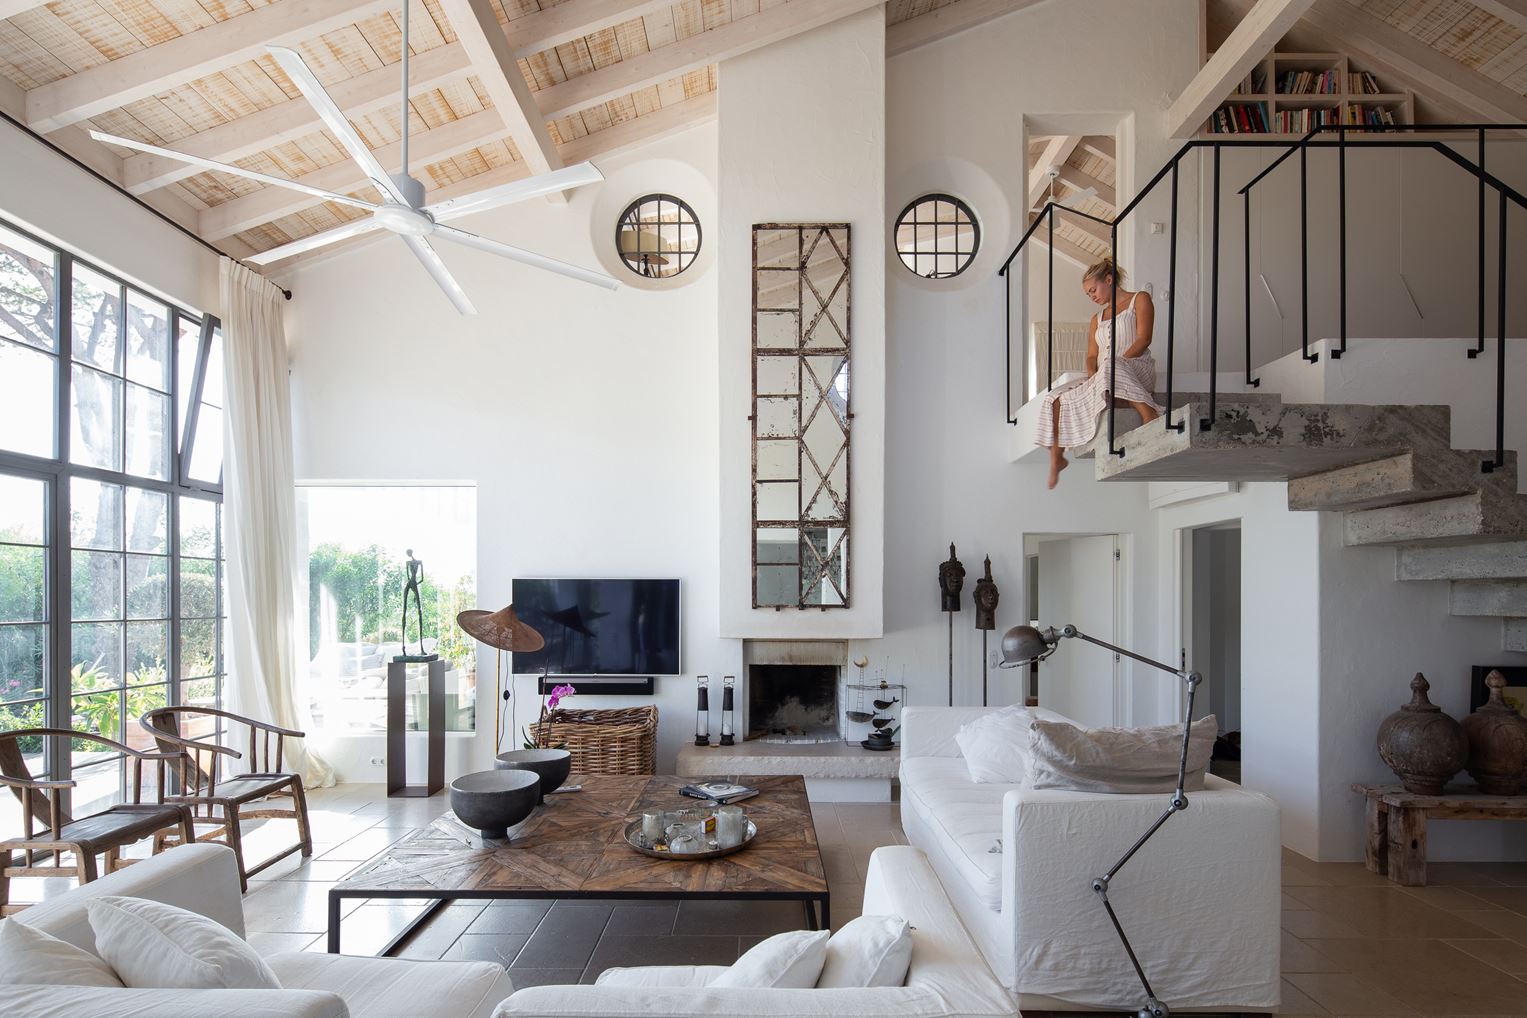 La arquitecta portuguesa Anabela Macieira diseña una casa en el Algarve inspirada en el Feng Shui